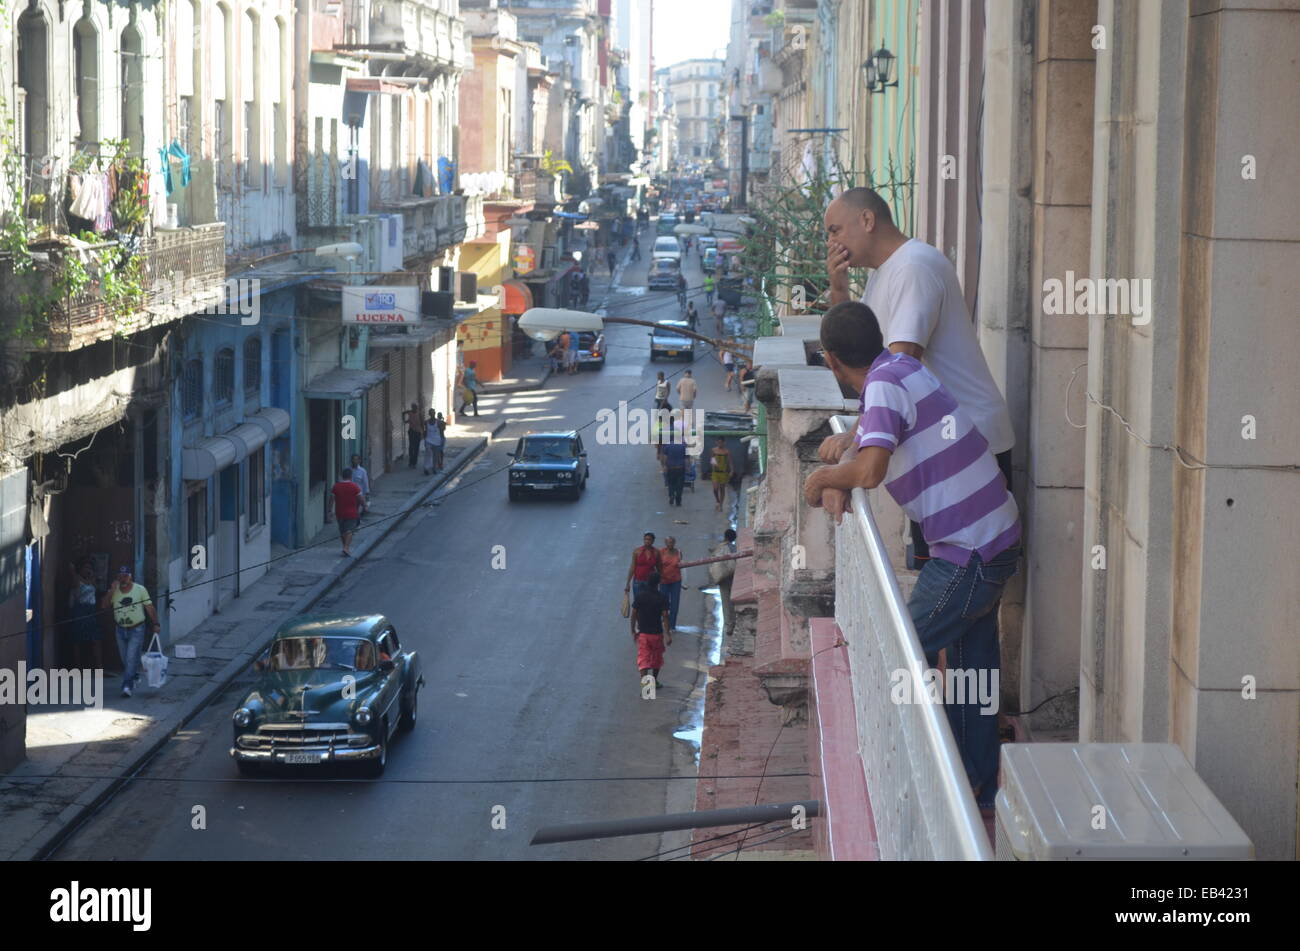 Le strade del Centro Habana / Habana Vieja distretti di Havana, Cuba Foto Stock